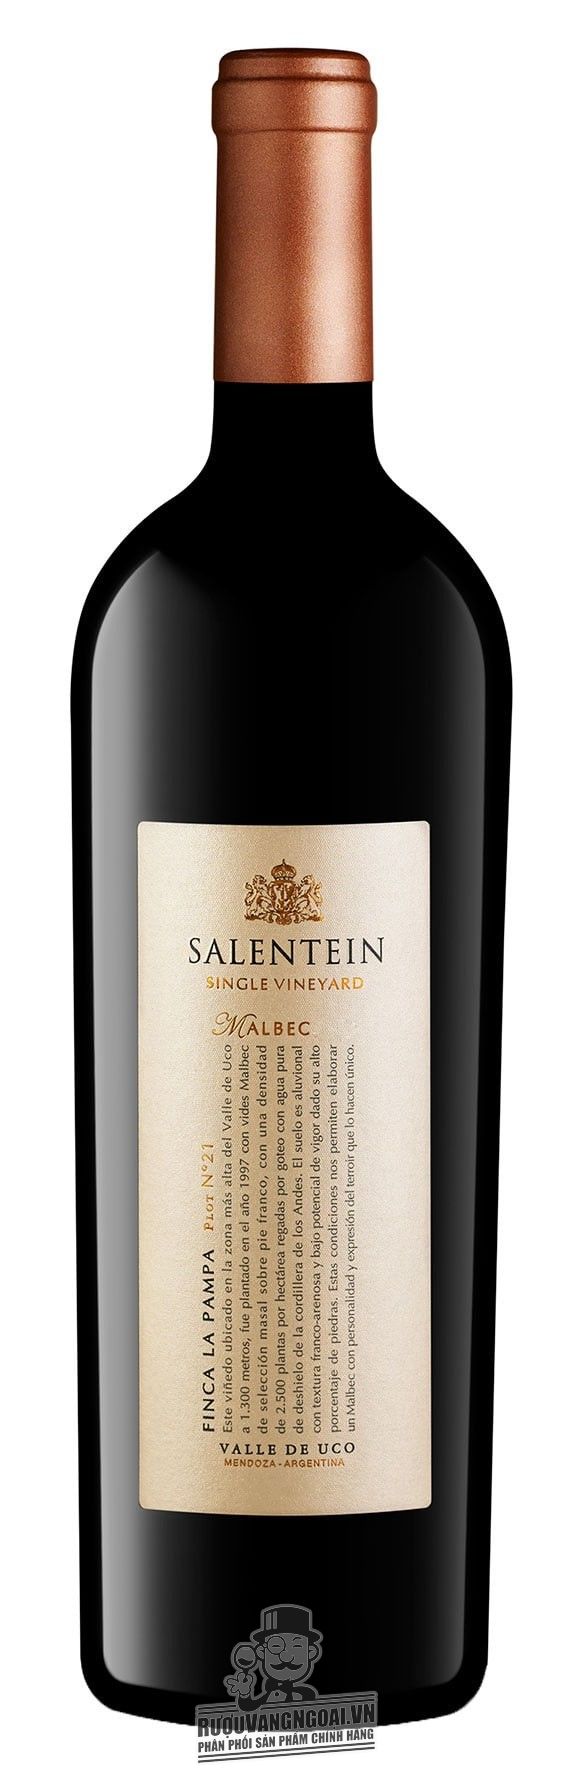 Kết quả hình ảnh cho argentina single vineyard malbec salentein